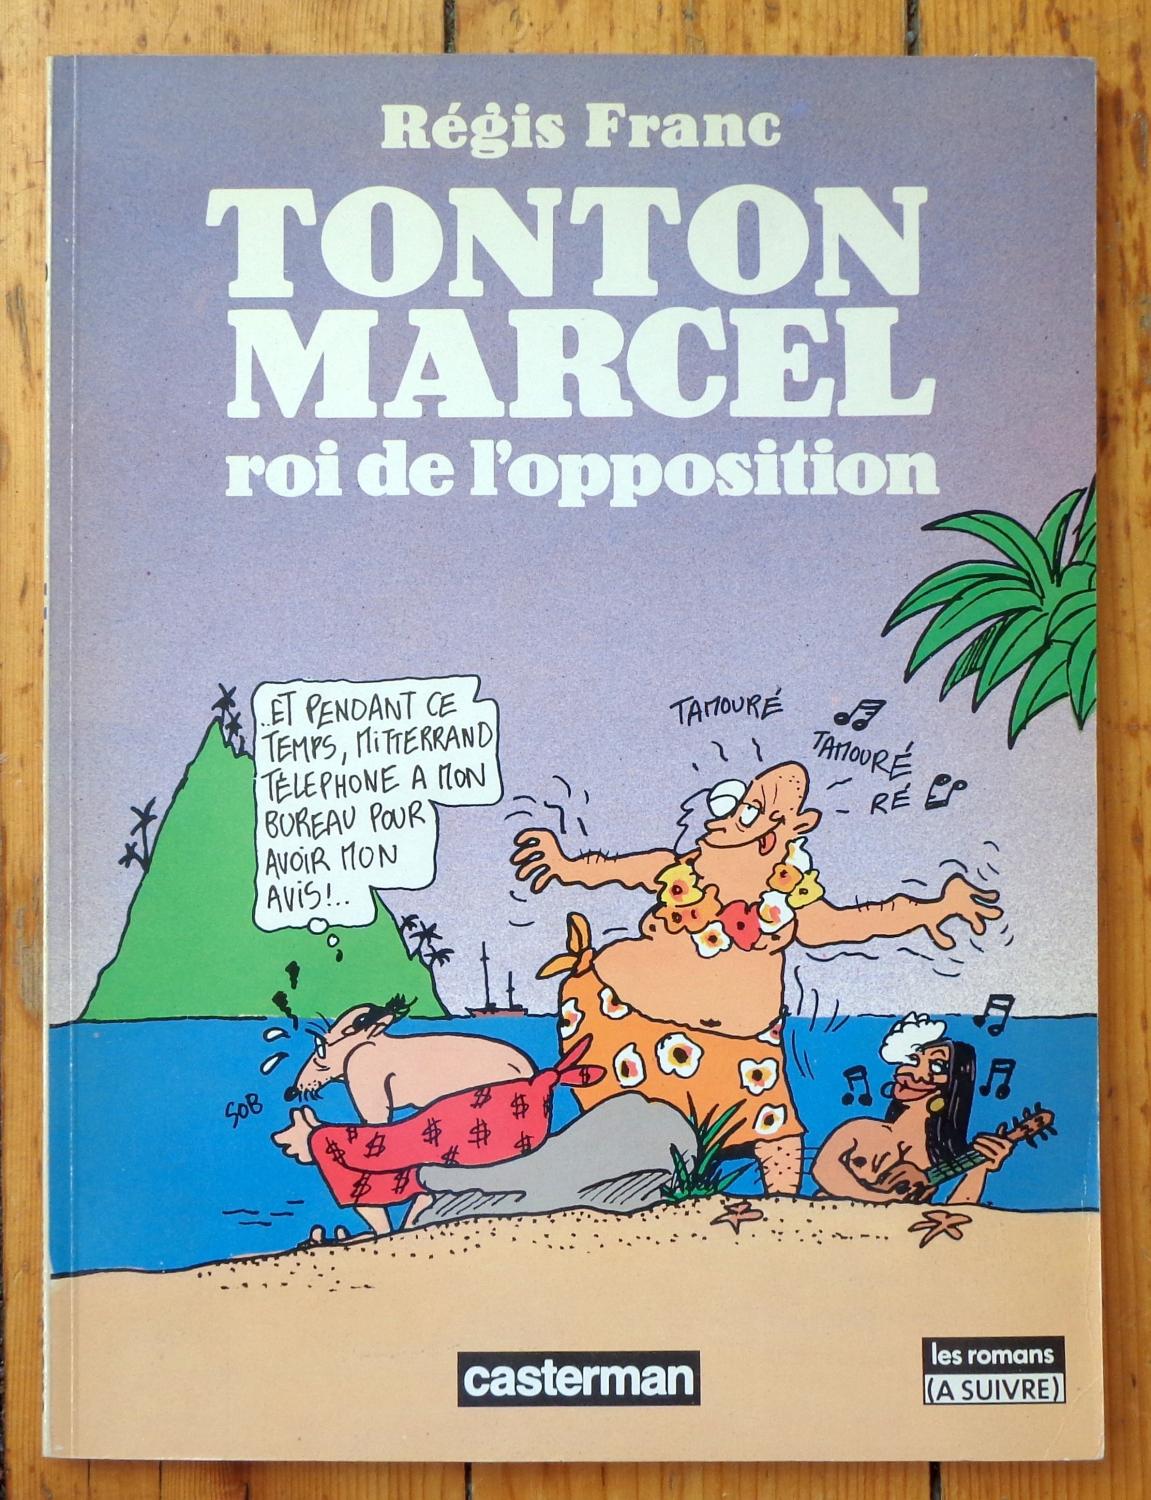 Offerte par son Mec a Tonton Marcel